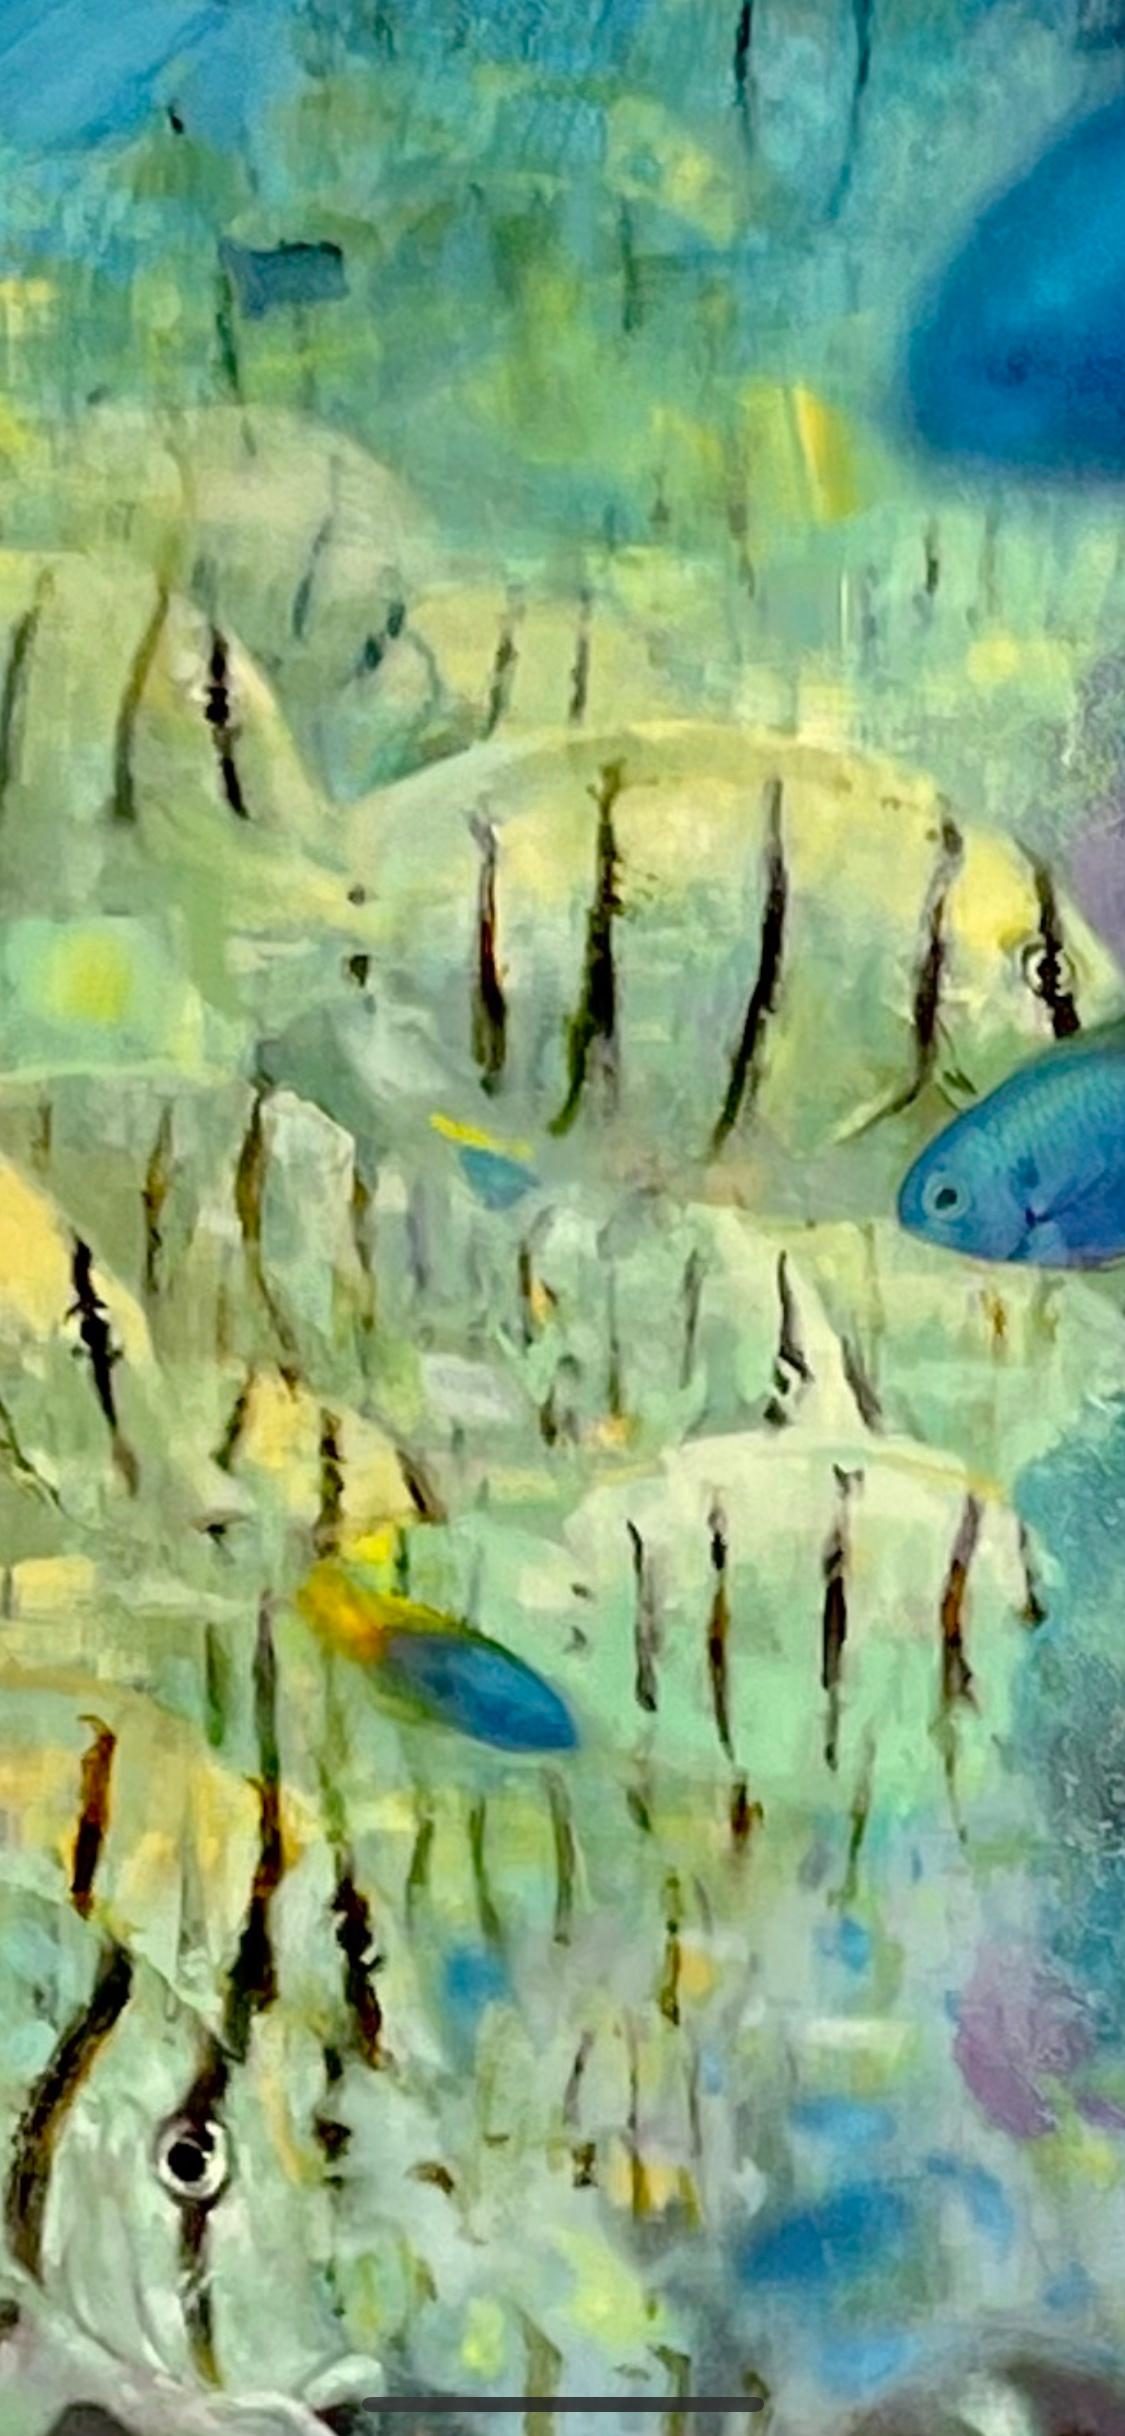 Korallen-Säule – Painting von David C. Gallup